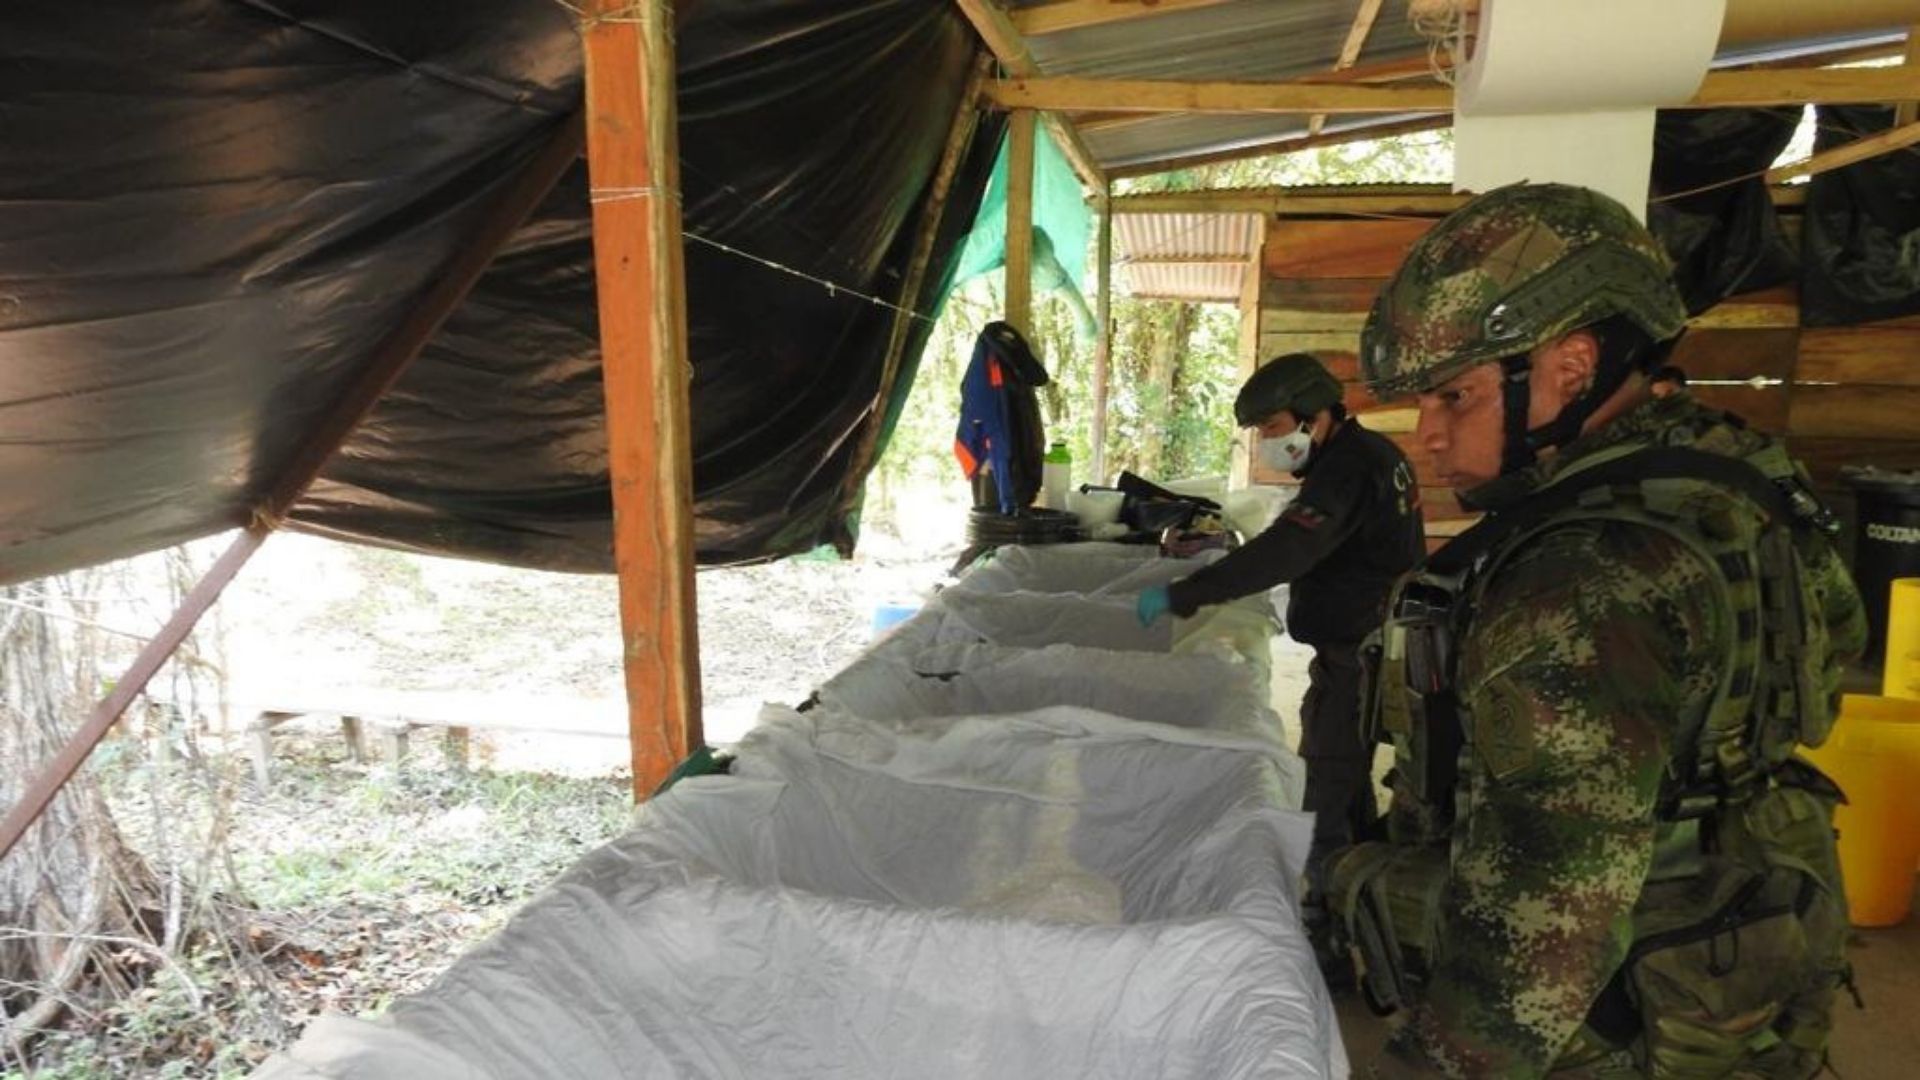 Incautación de cocaína por el Ejército en Tibú, Norte de Santander. Ejército nacional.